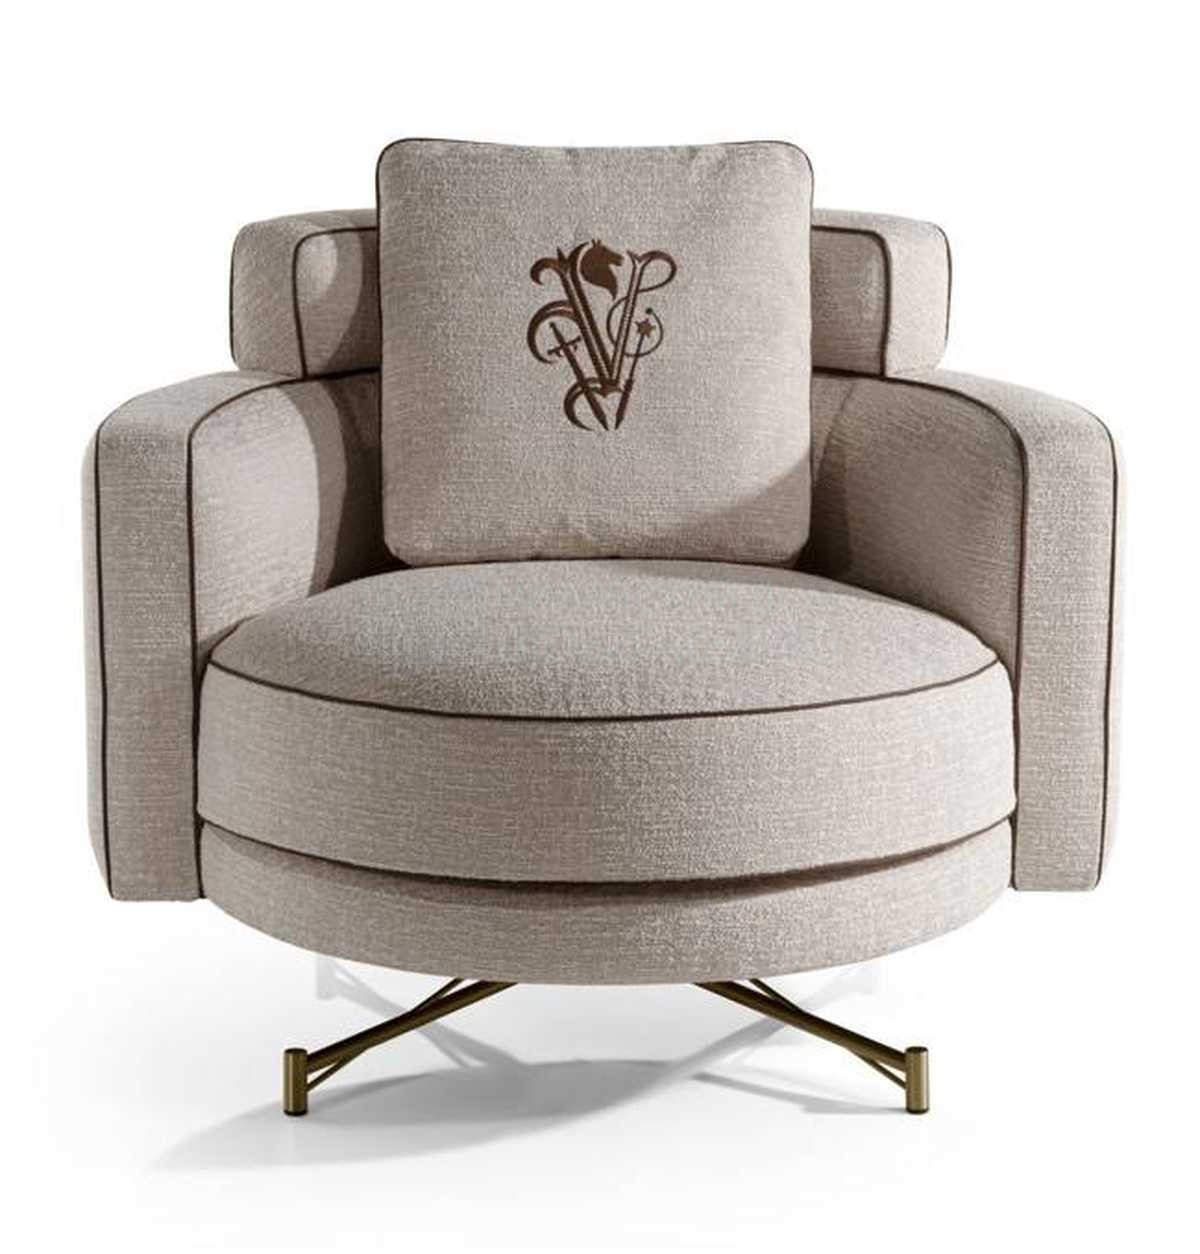 Кресло Khamma armchair из Италии фабрики IPE CAVALLI VISIONNAIRE